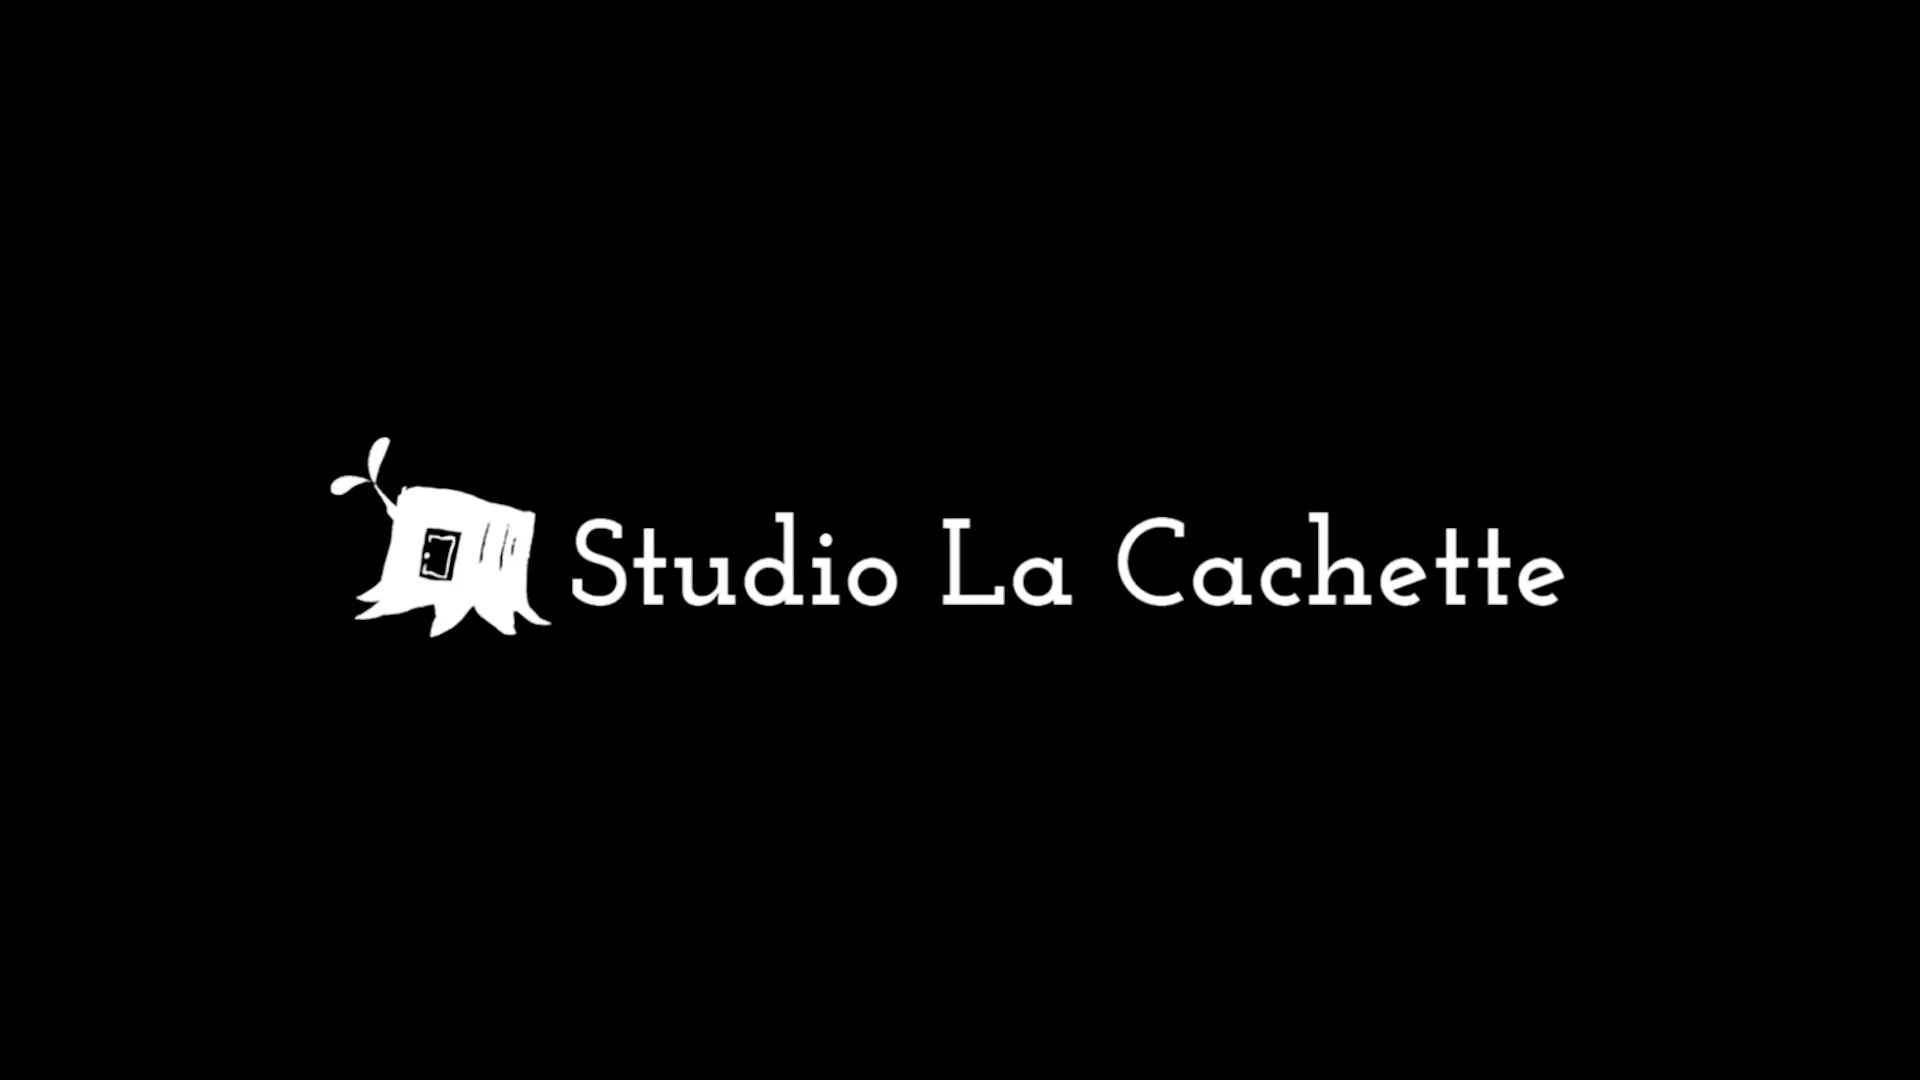 Studio La Cachette - Bande demo 2023 on Vimeo